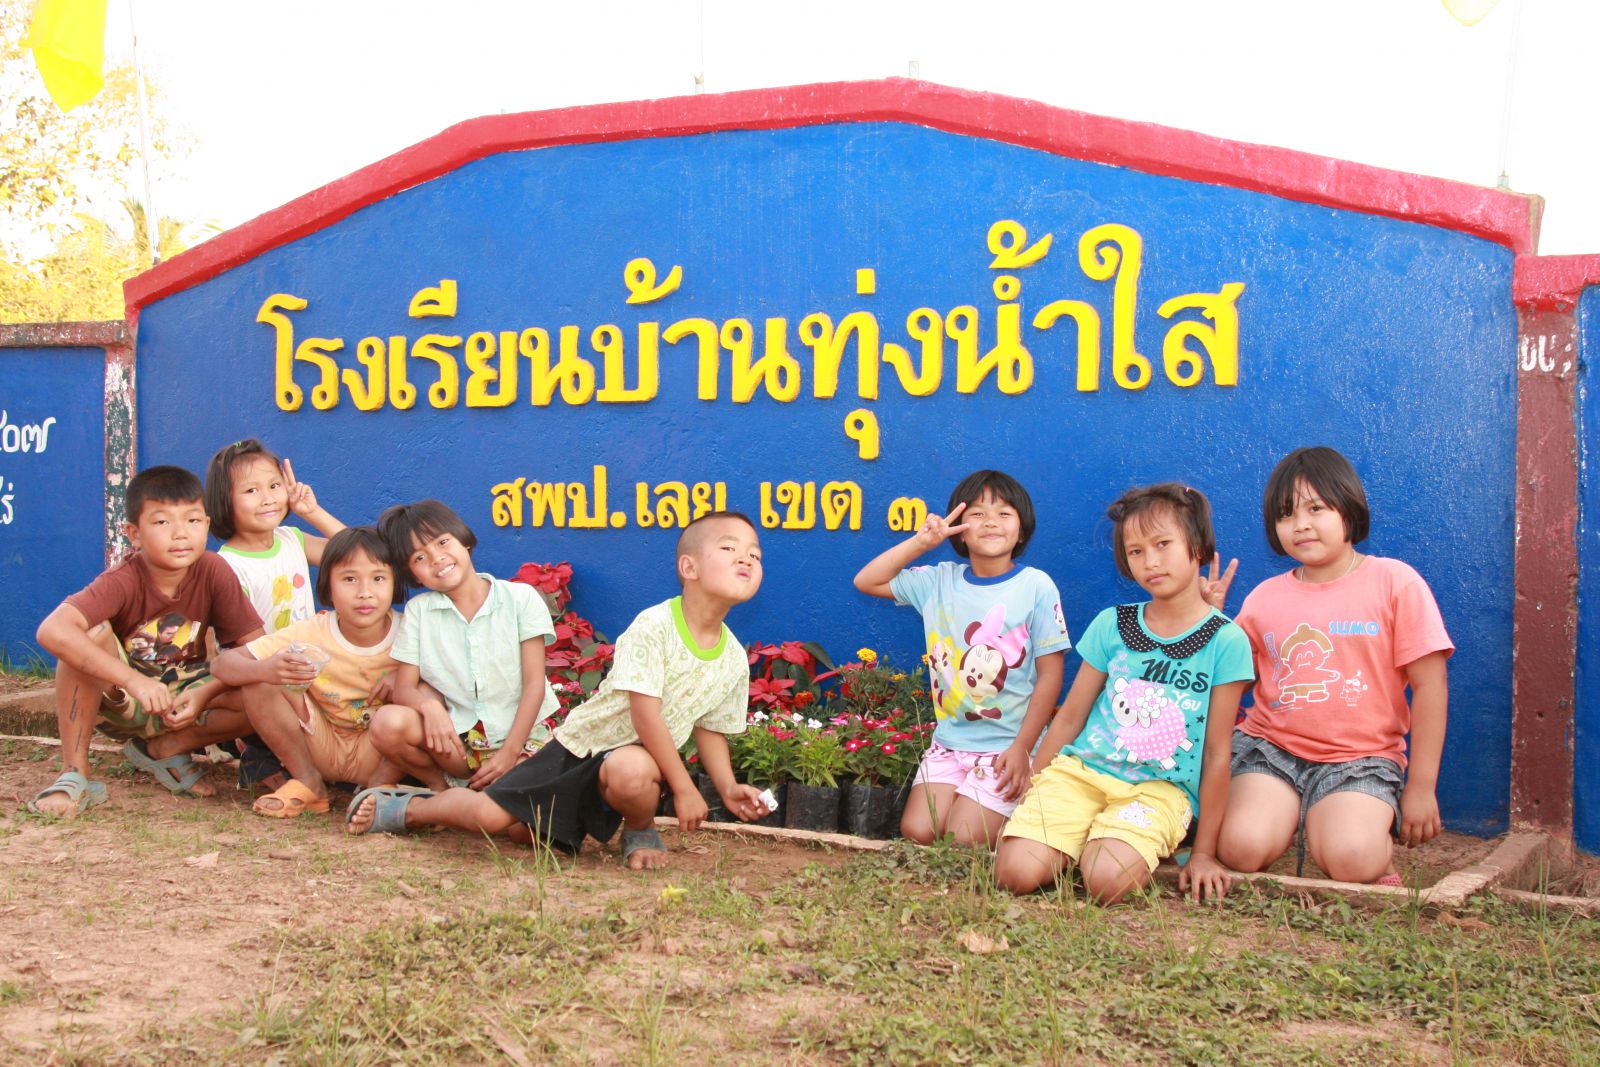  โครงการสานฝันเด็กไทยได้เล่าเรียน โครงการที่ 9 / ณ จังหวัดเลย